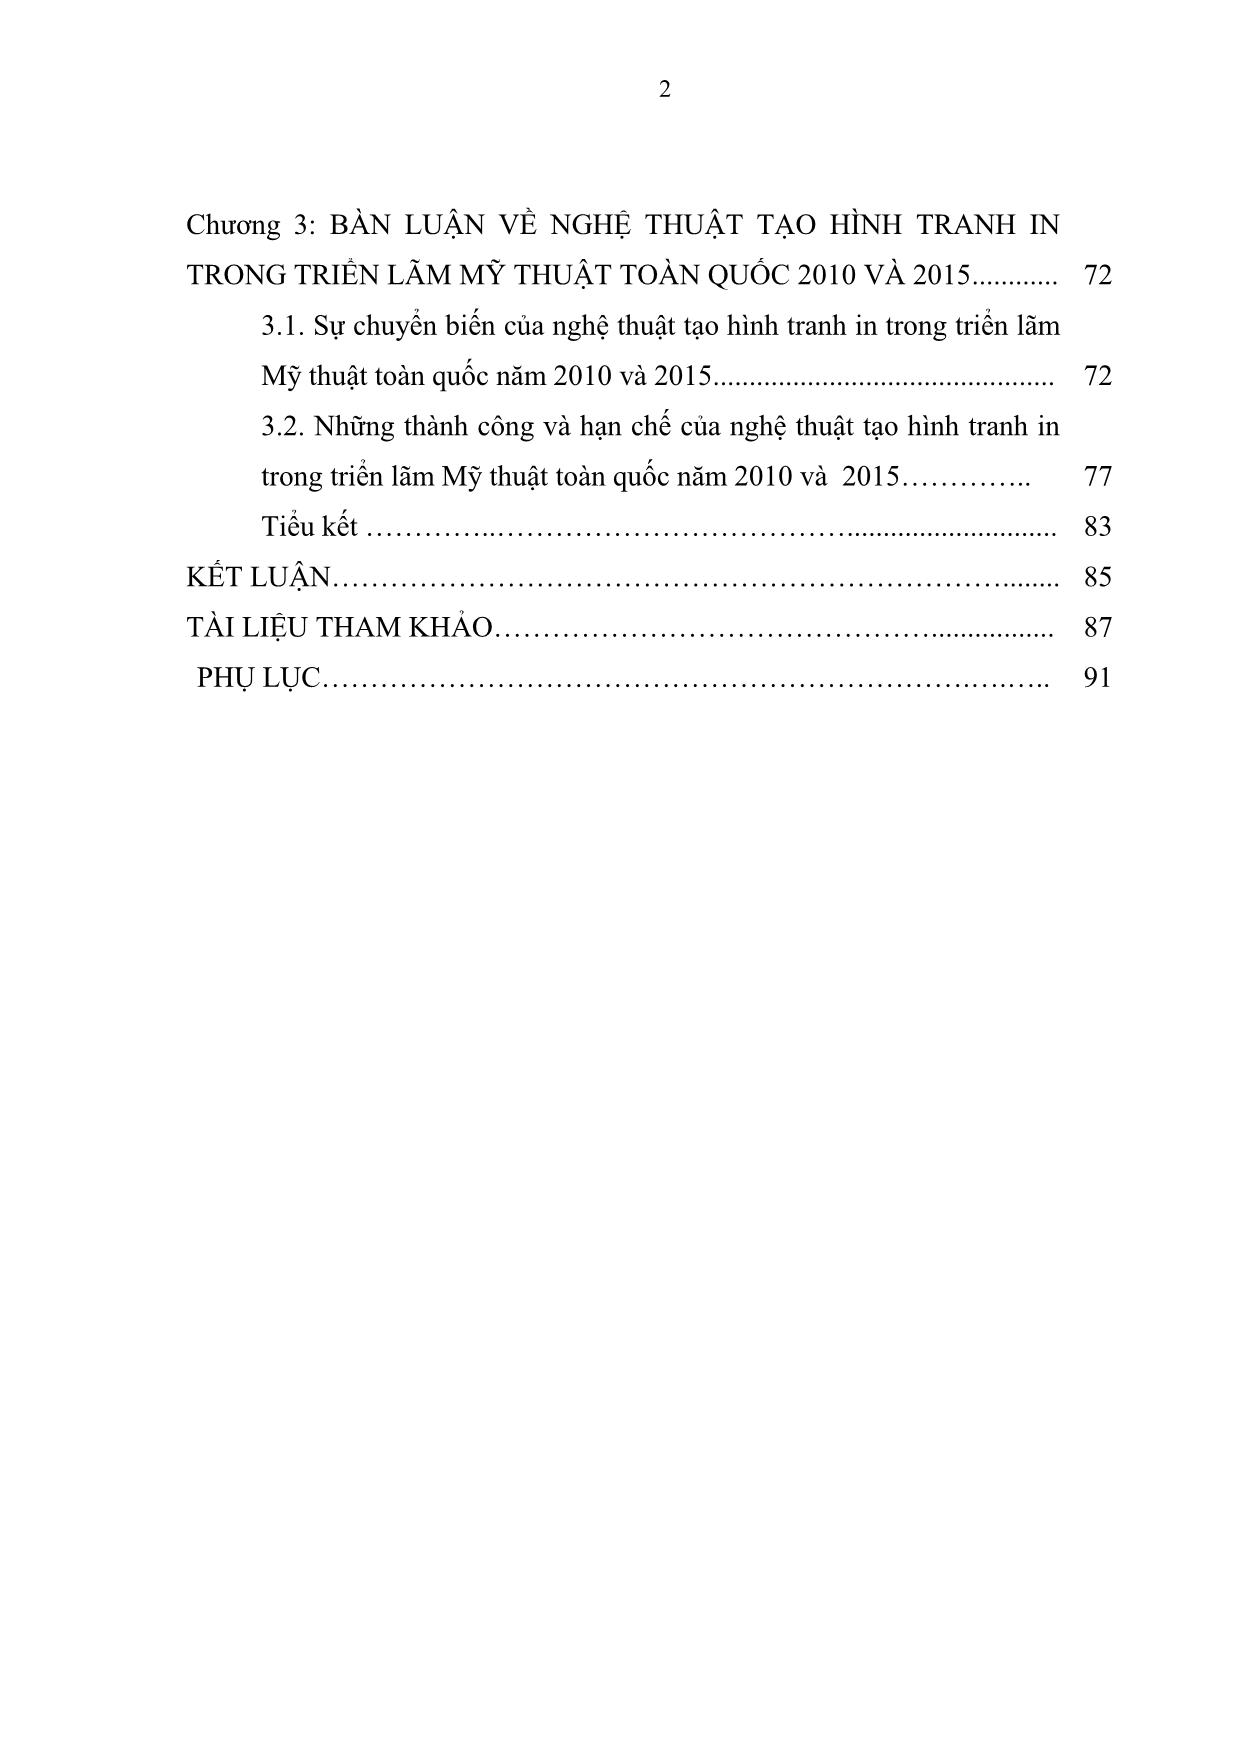 Những thành công và hạn chế của đồ hoạ tranh in có sử dụng kĩ thuật số ở Việt Nam giai đoạn 2010 -  2015 trang 2